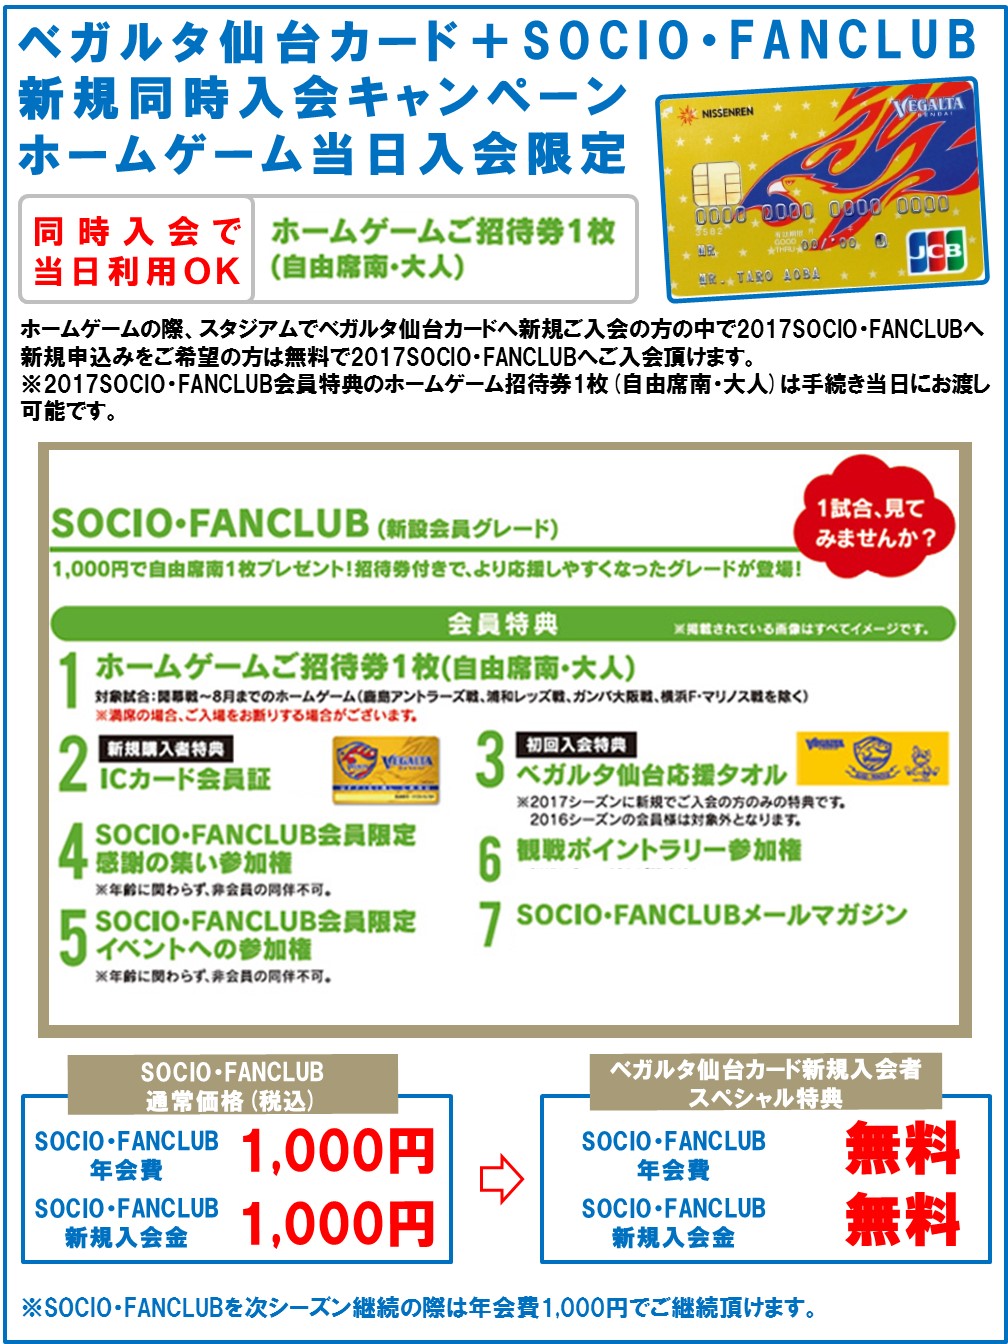 バックナンバー17 6月4日 J1 甲府戦 ベガルタ仙台カード Socio Fanclub新規同時入会キャンペーン